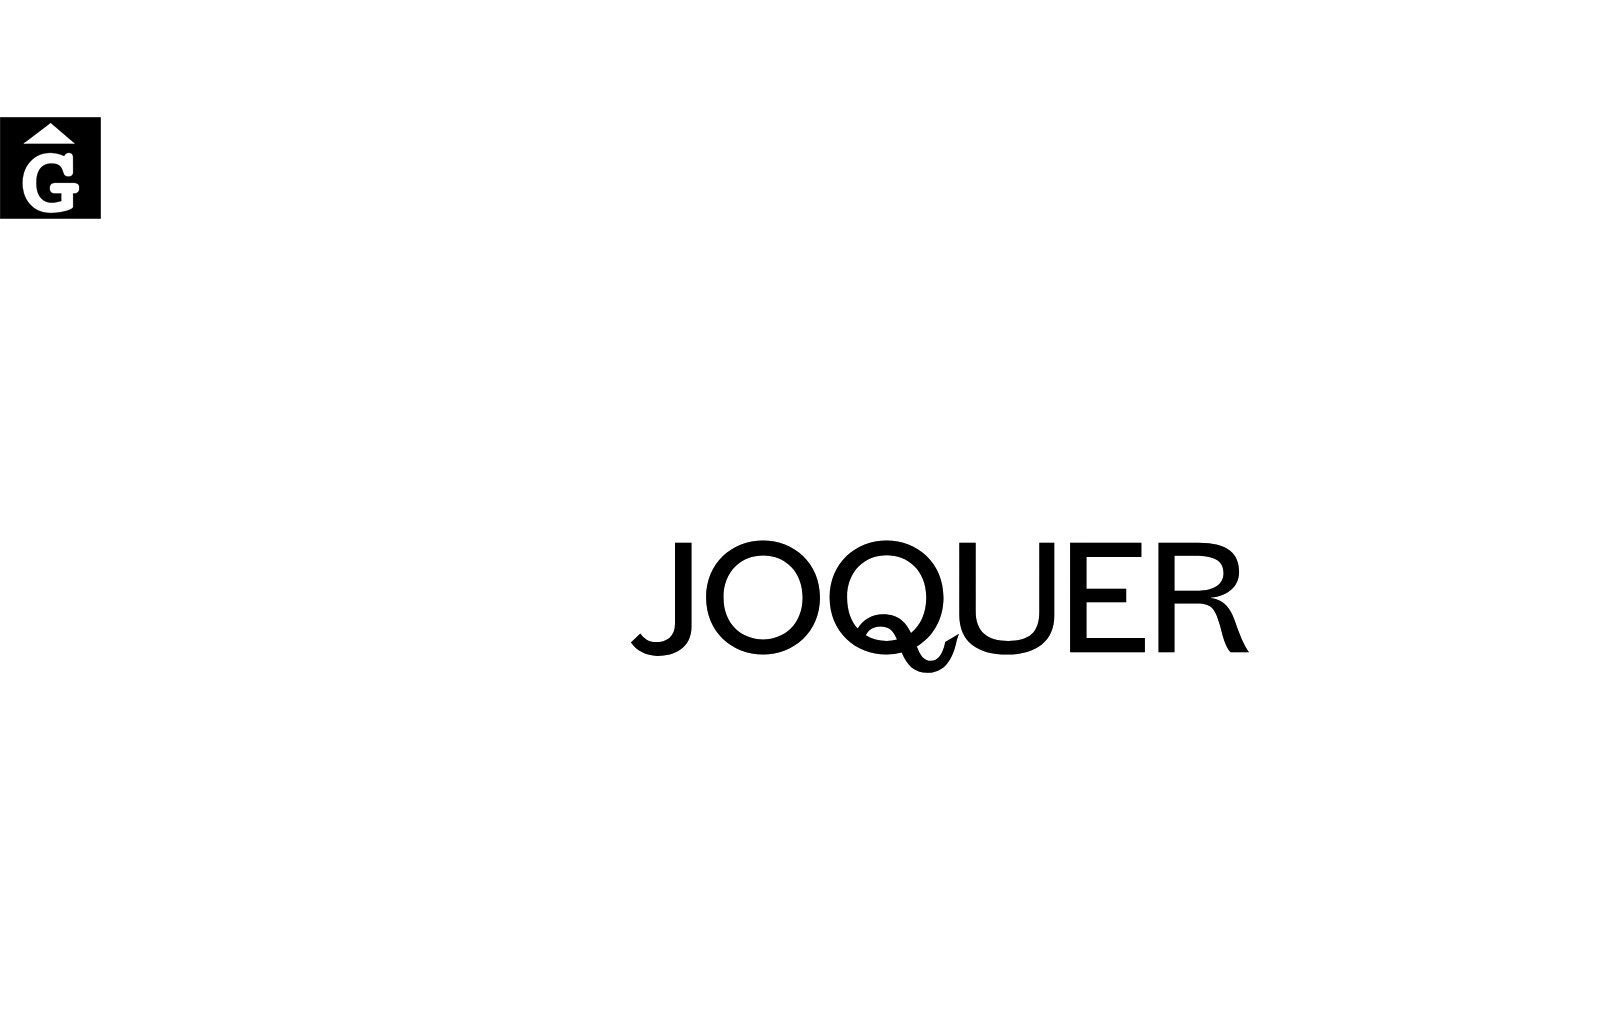 Joquer és una marca de la nostra botiga Porqueres – Girona mobles Gifreu